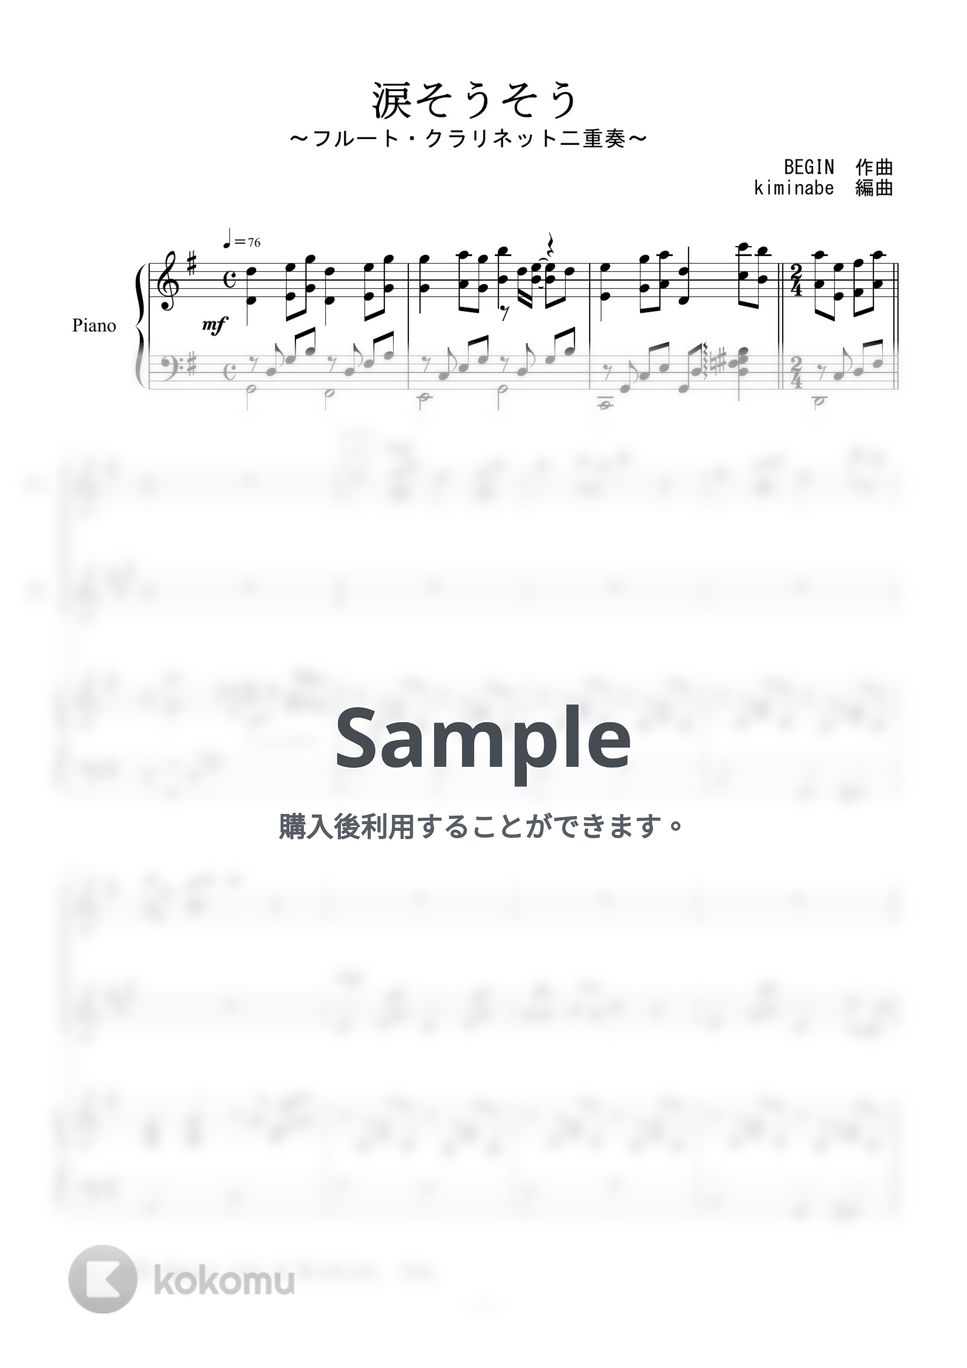 森山良子 - 涙そうそう (フルート・クラリネット二重奏) by kiminabe